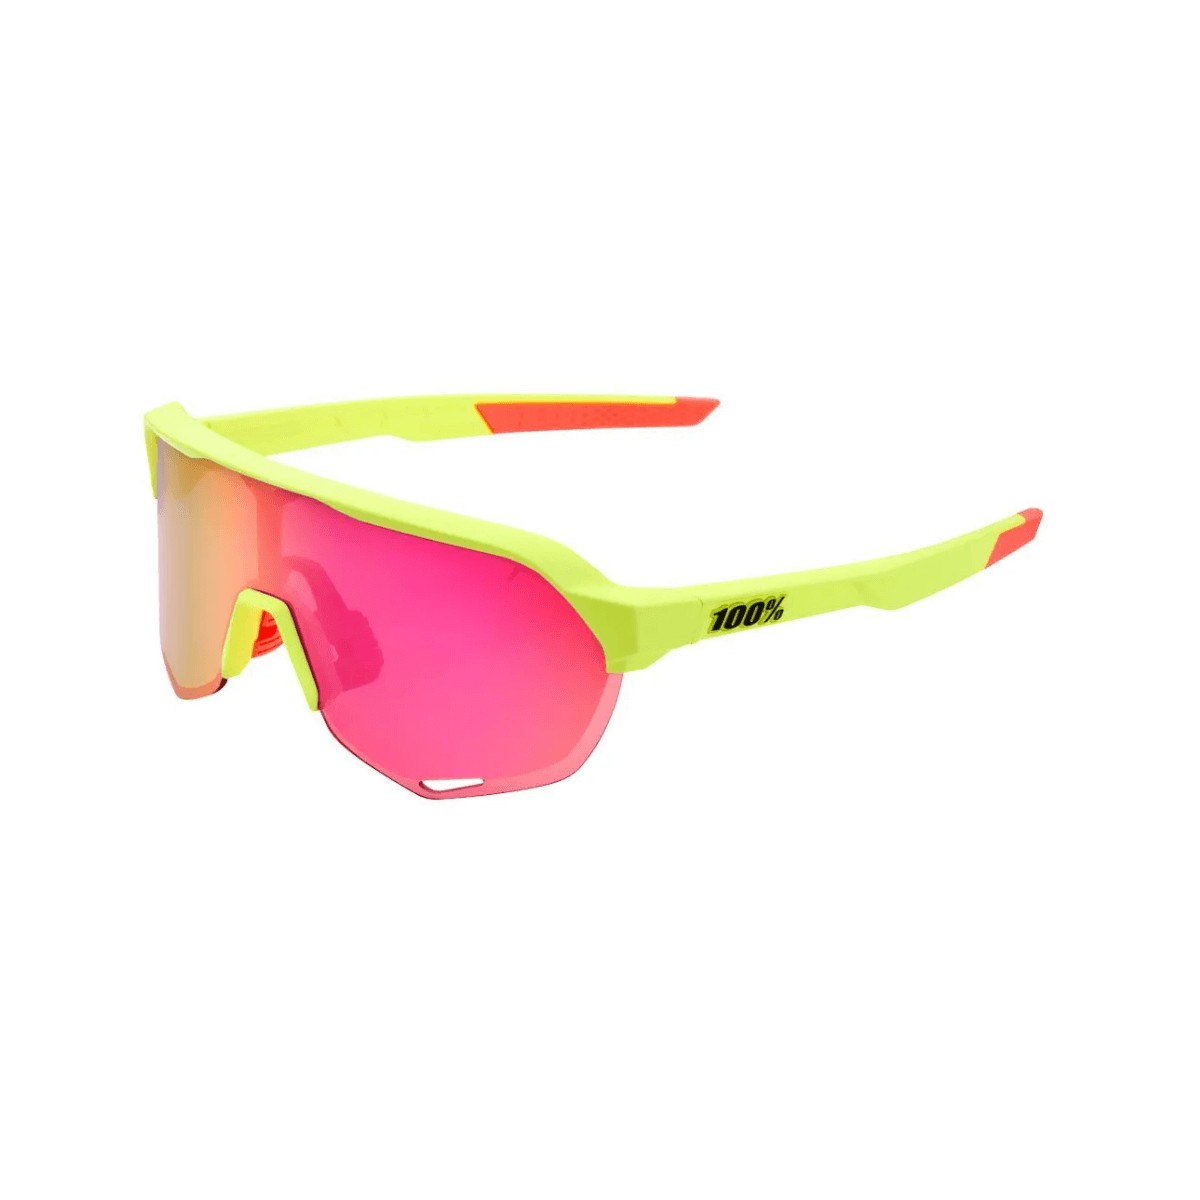 100% Sportbrille S2 Fahrradbrille Multilayer Mirror Lens Bike Glasses Gelb/pink